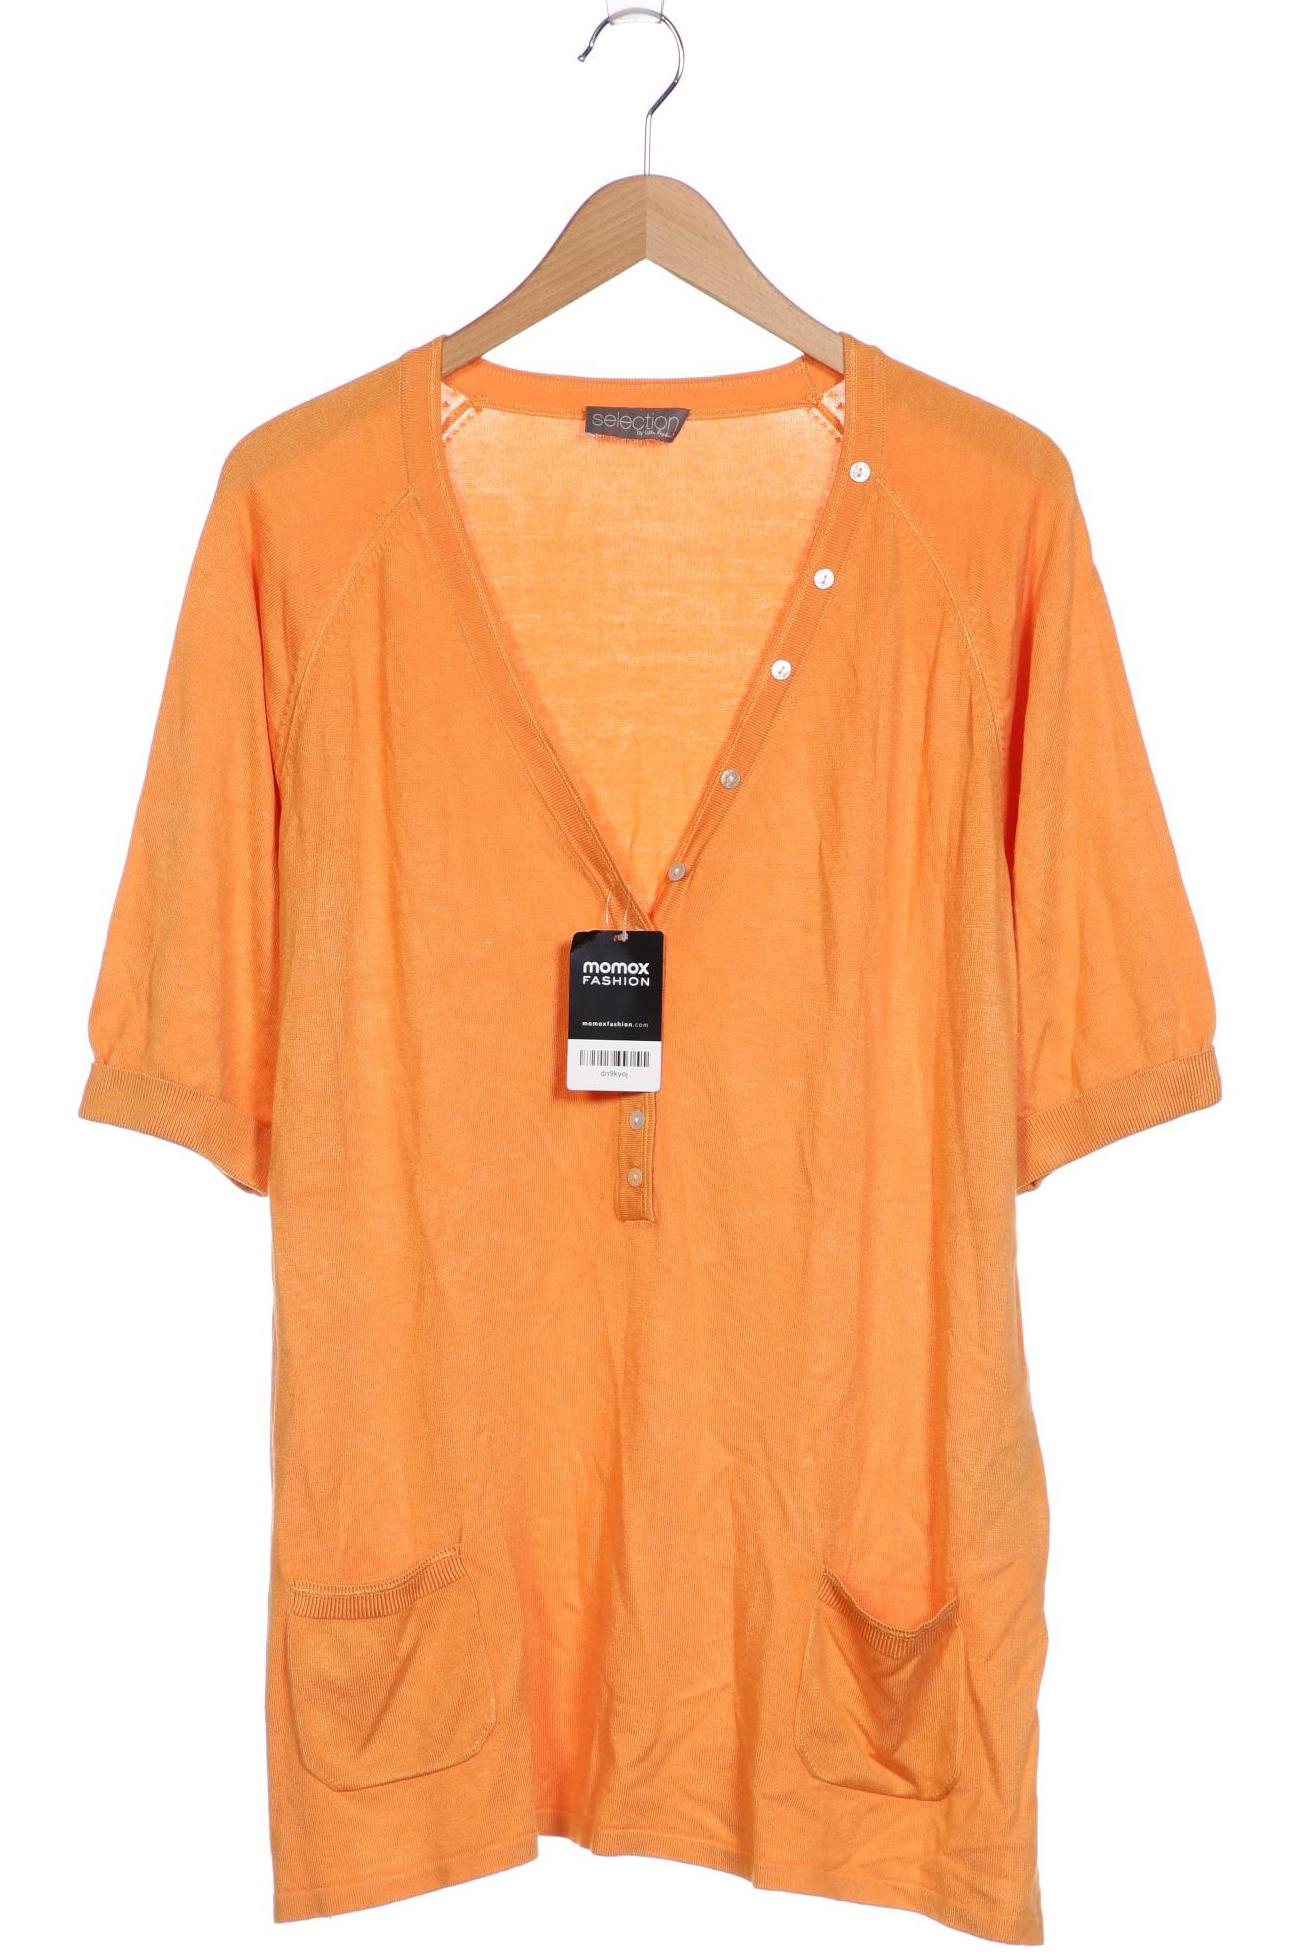 Selection by Ulla Popken Damen T-Shirt, orange, Gr. 46 von Selection by Ulla Popken